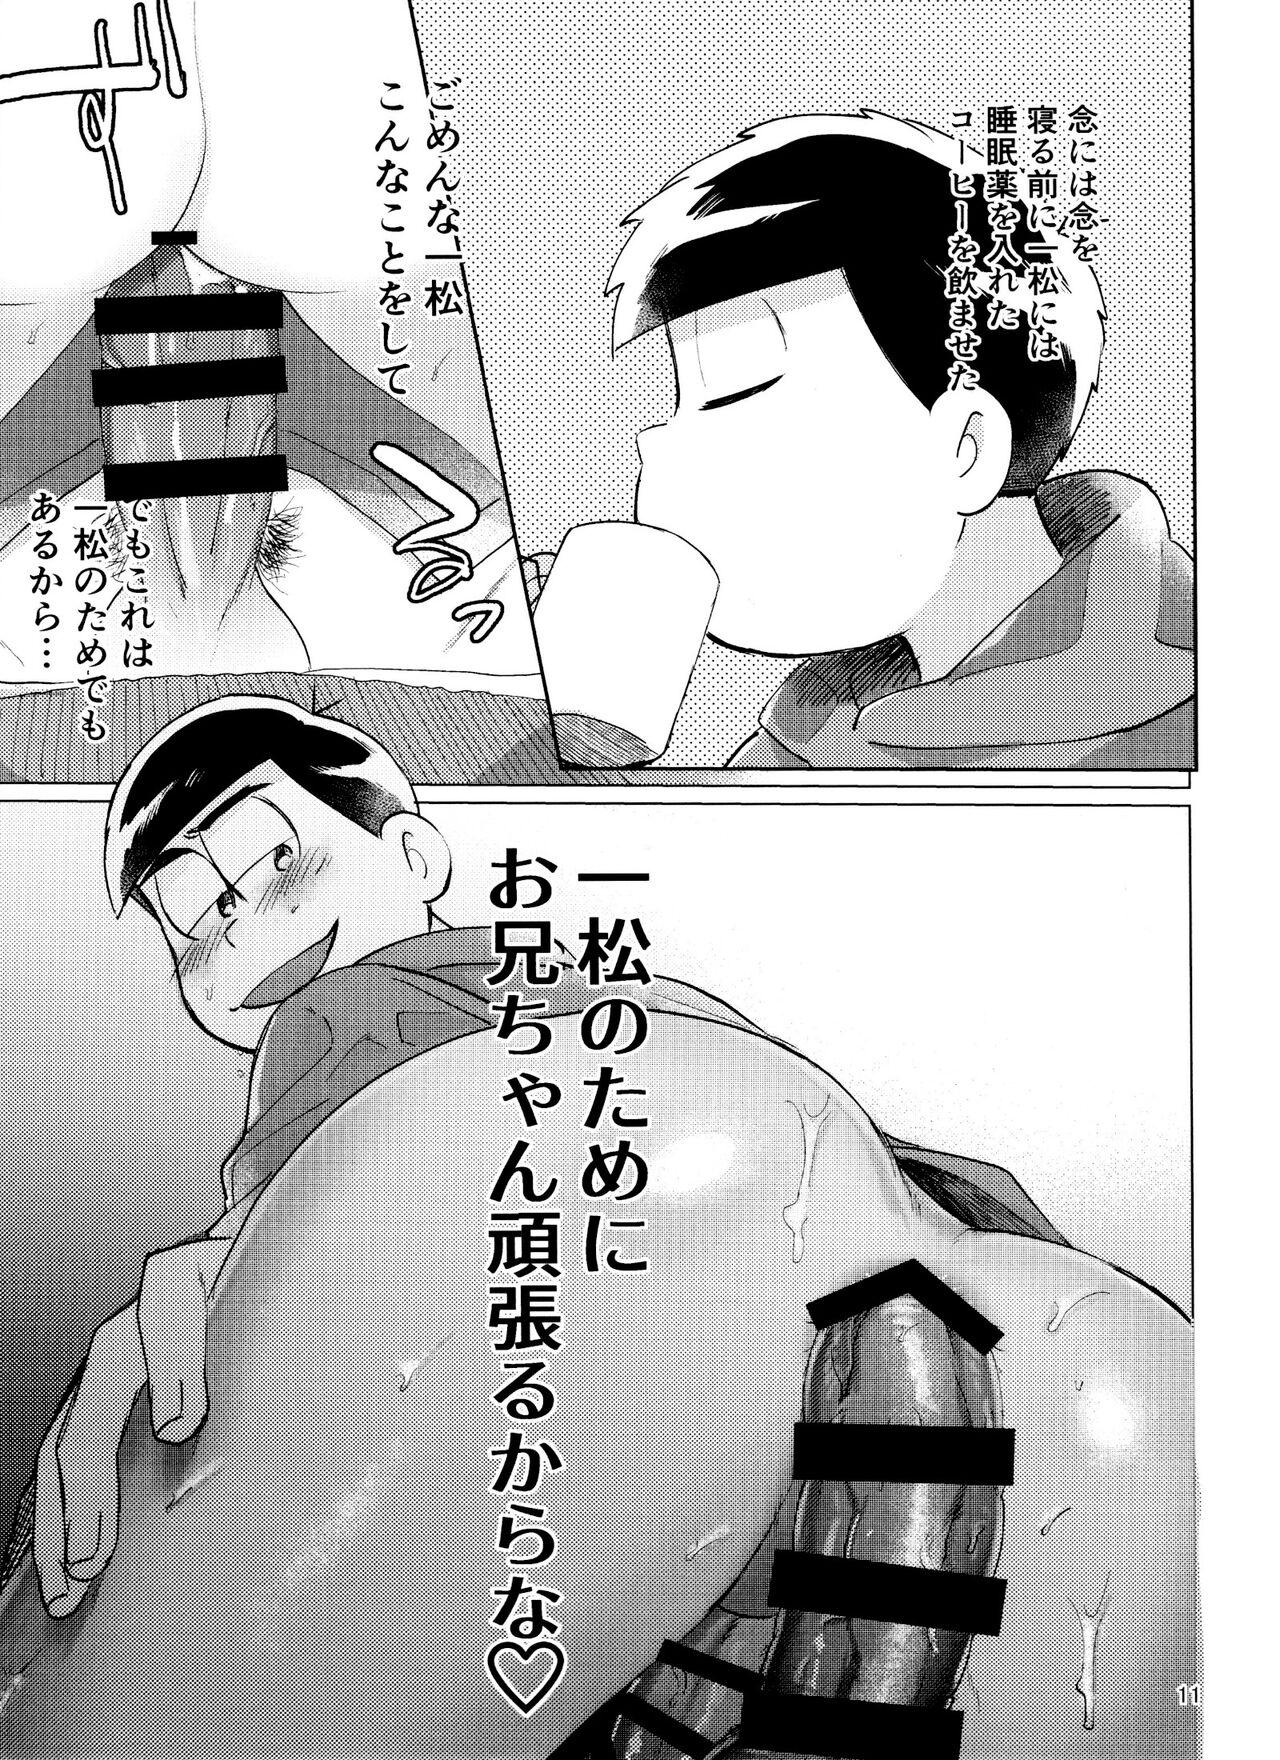 Pasivo Osomatsu-san Nekasete Kure, Burazaa!! - Osomatsu san Show - Page 11